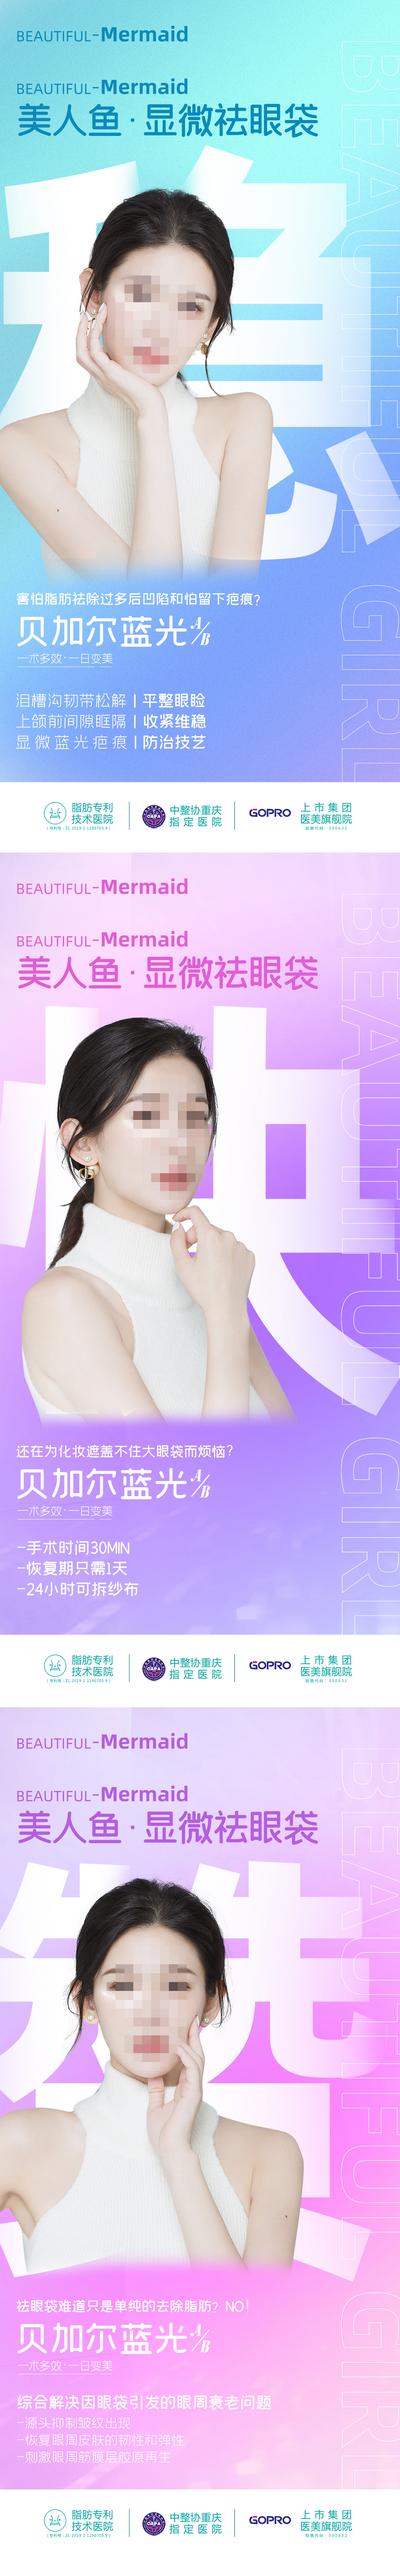 南门网 广告 海报 电商 人物 医美 活动 人物 创意 系列 关键词 汉子 大字报